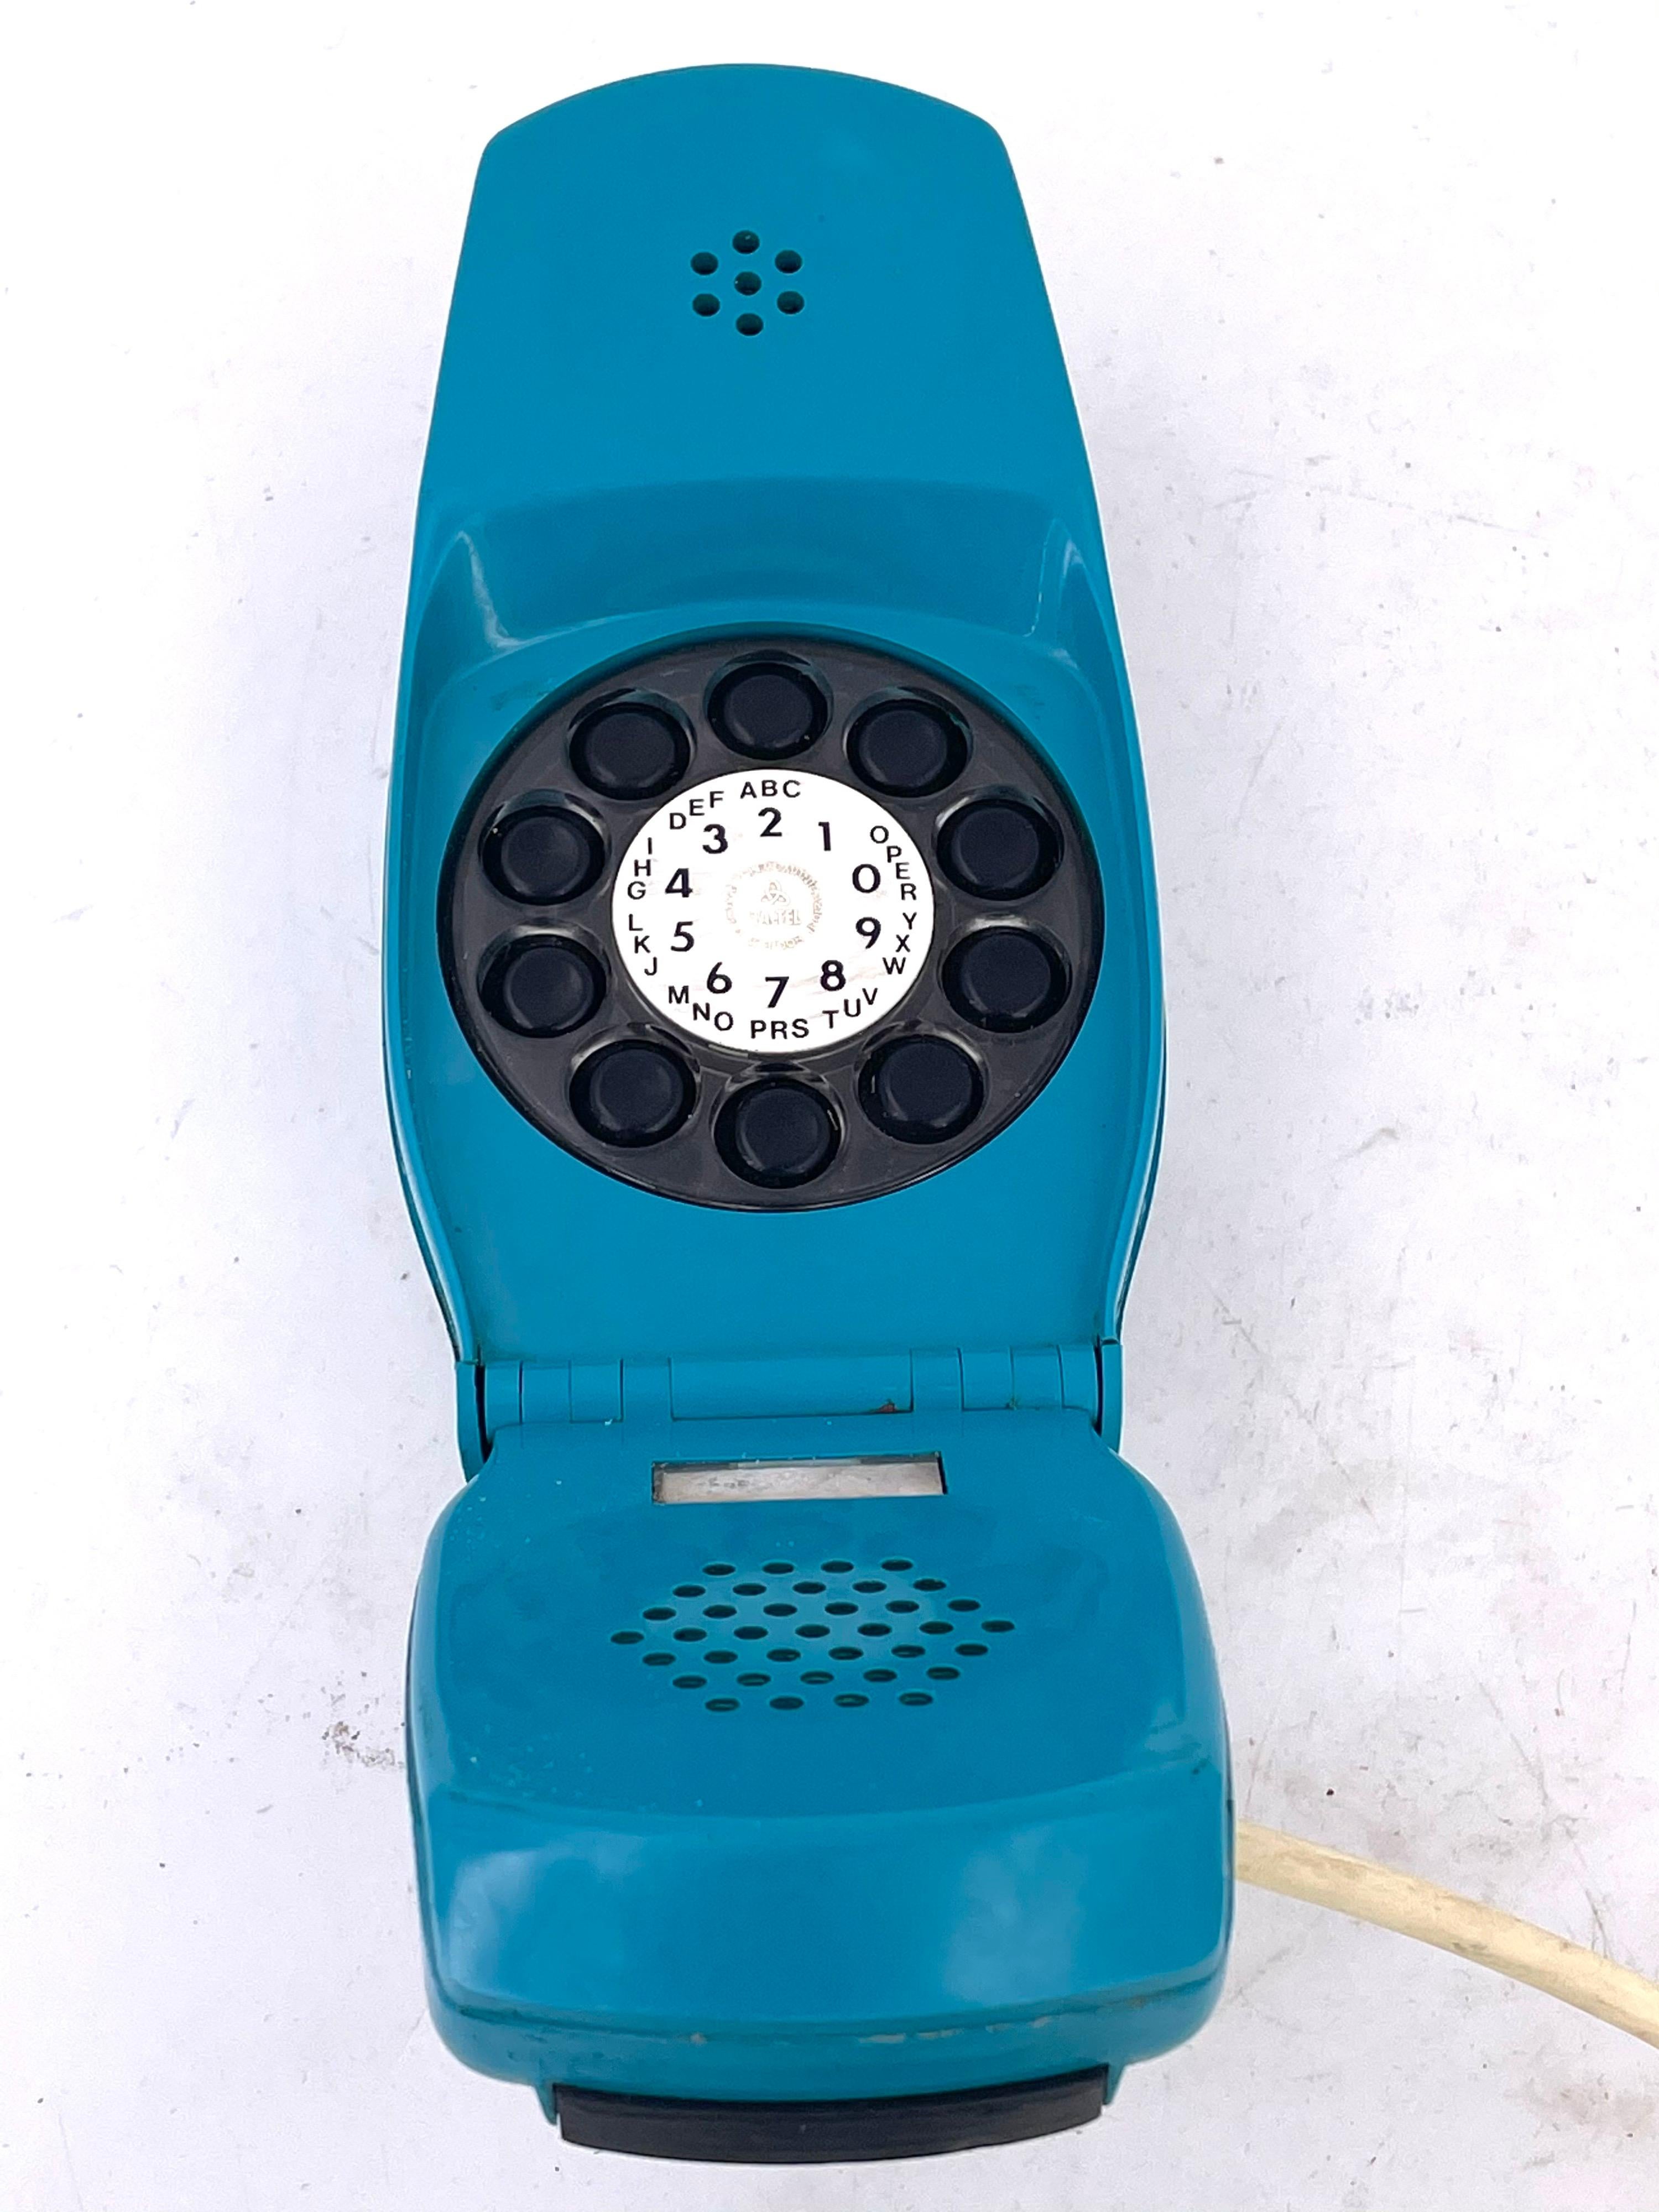 grillo telephone